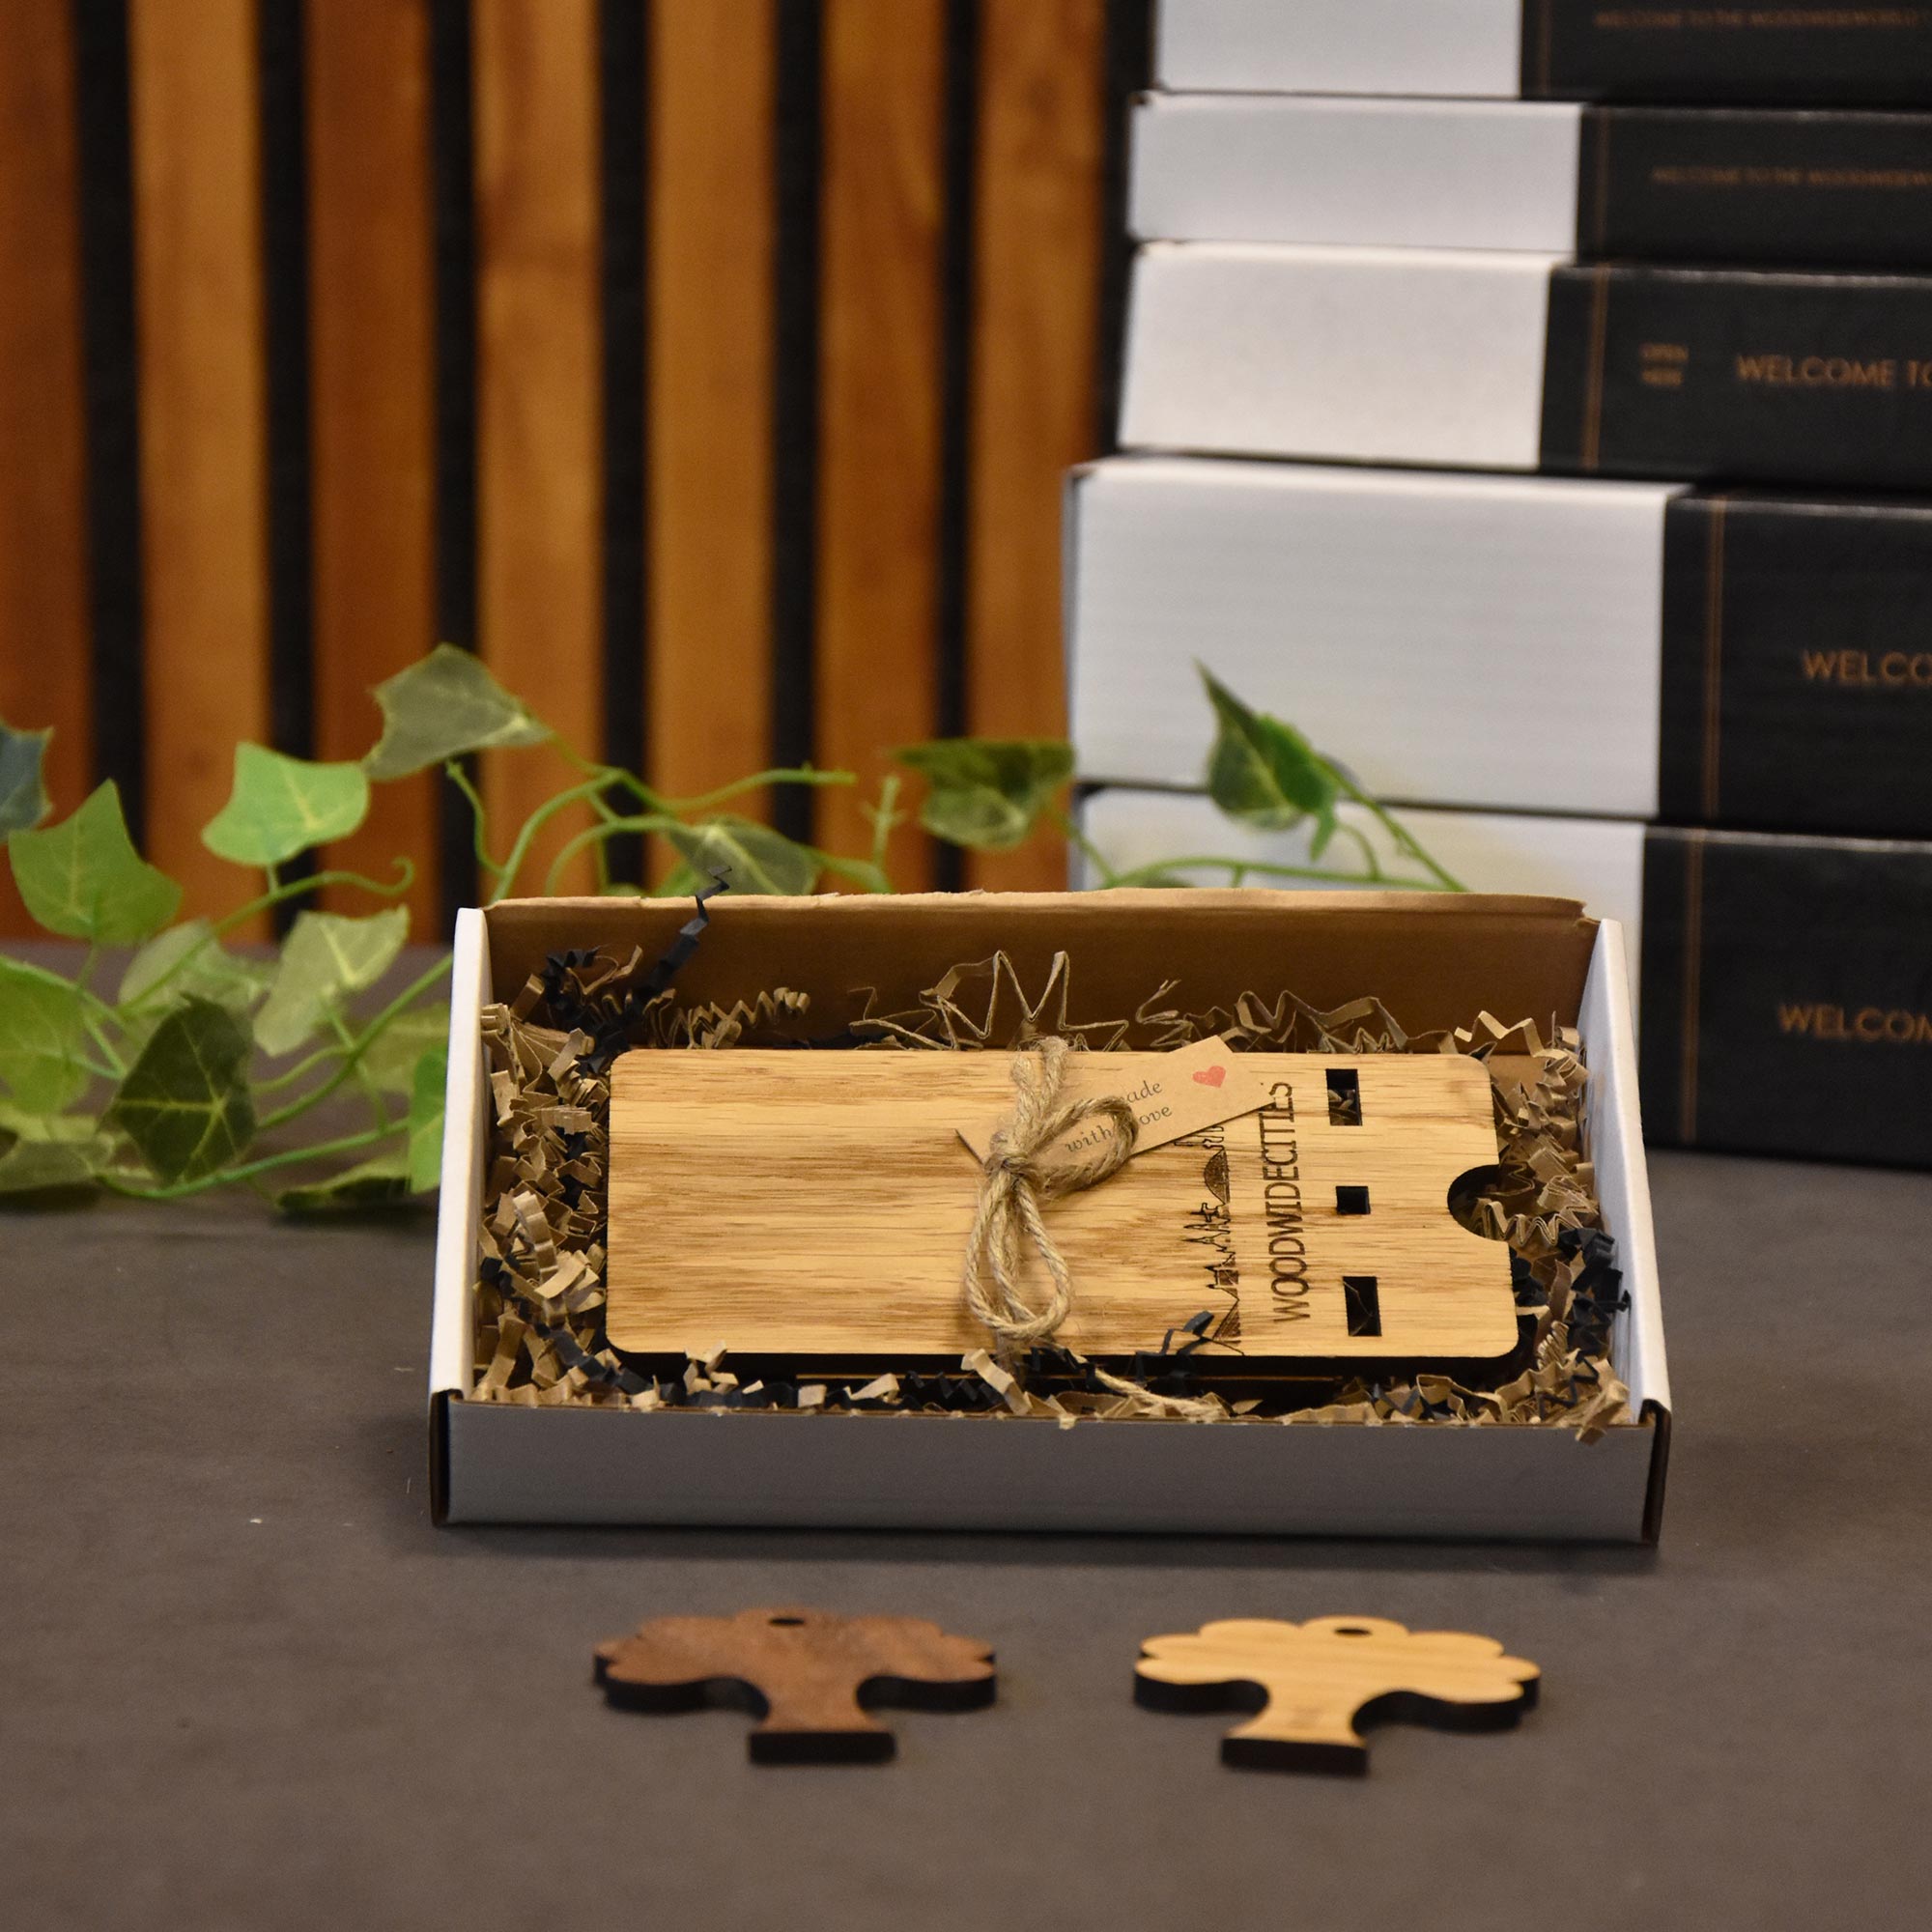 Skyline Telefoonhouder Westland houten cadeau decoratie relatiegeschenk van WoodWideCities